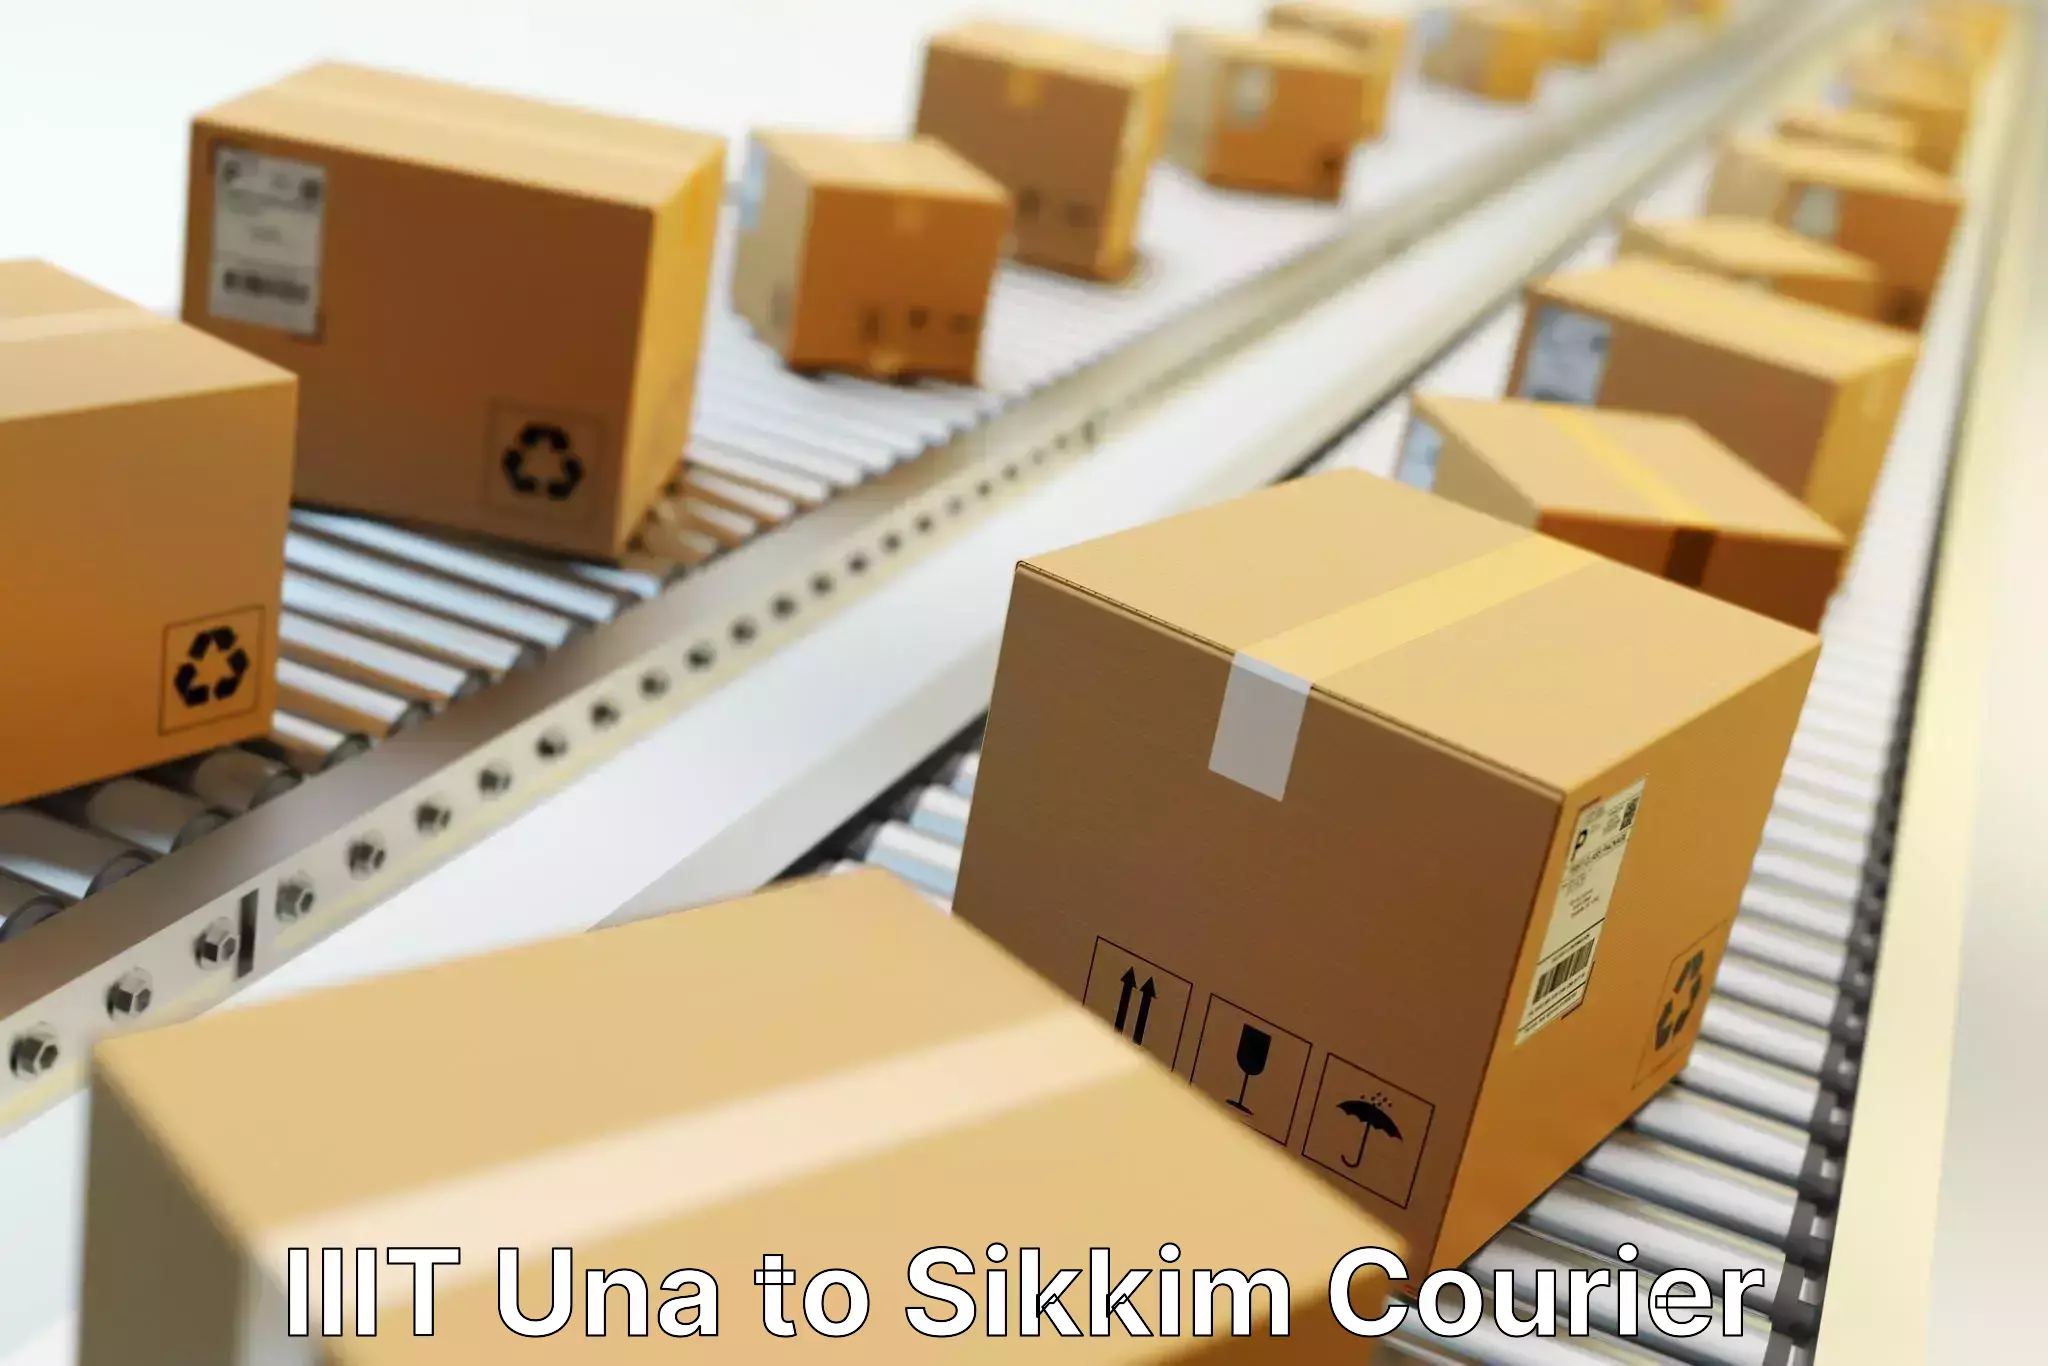 Doorstep delivery service in IIIT Una to Singtam